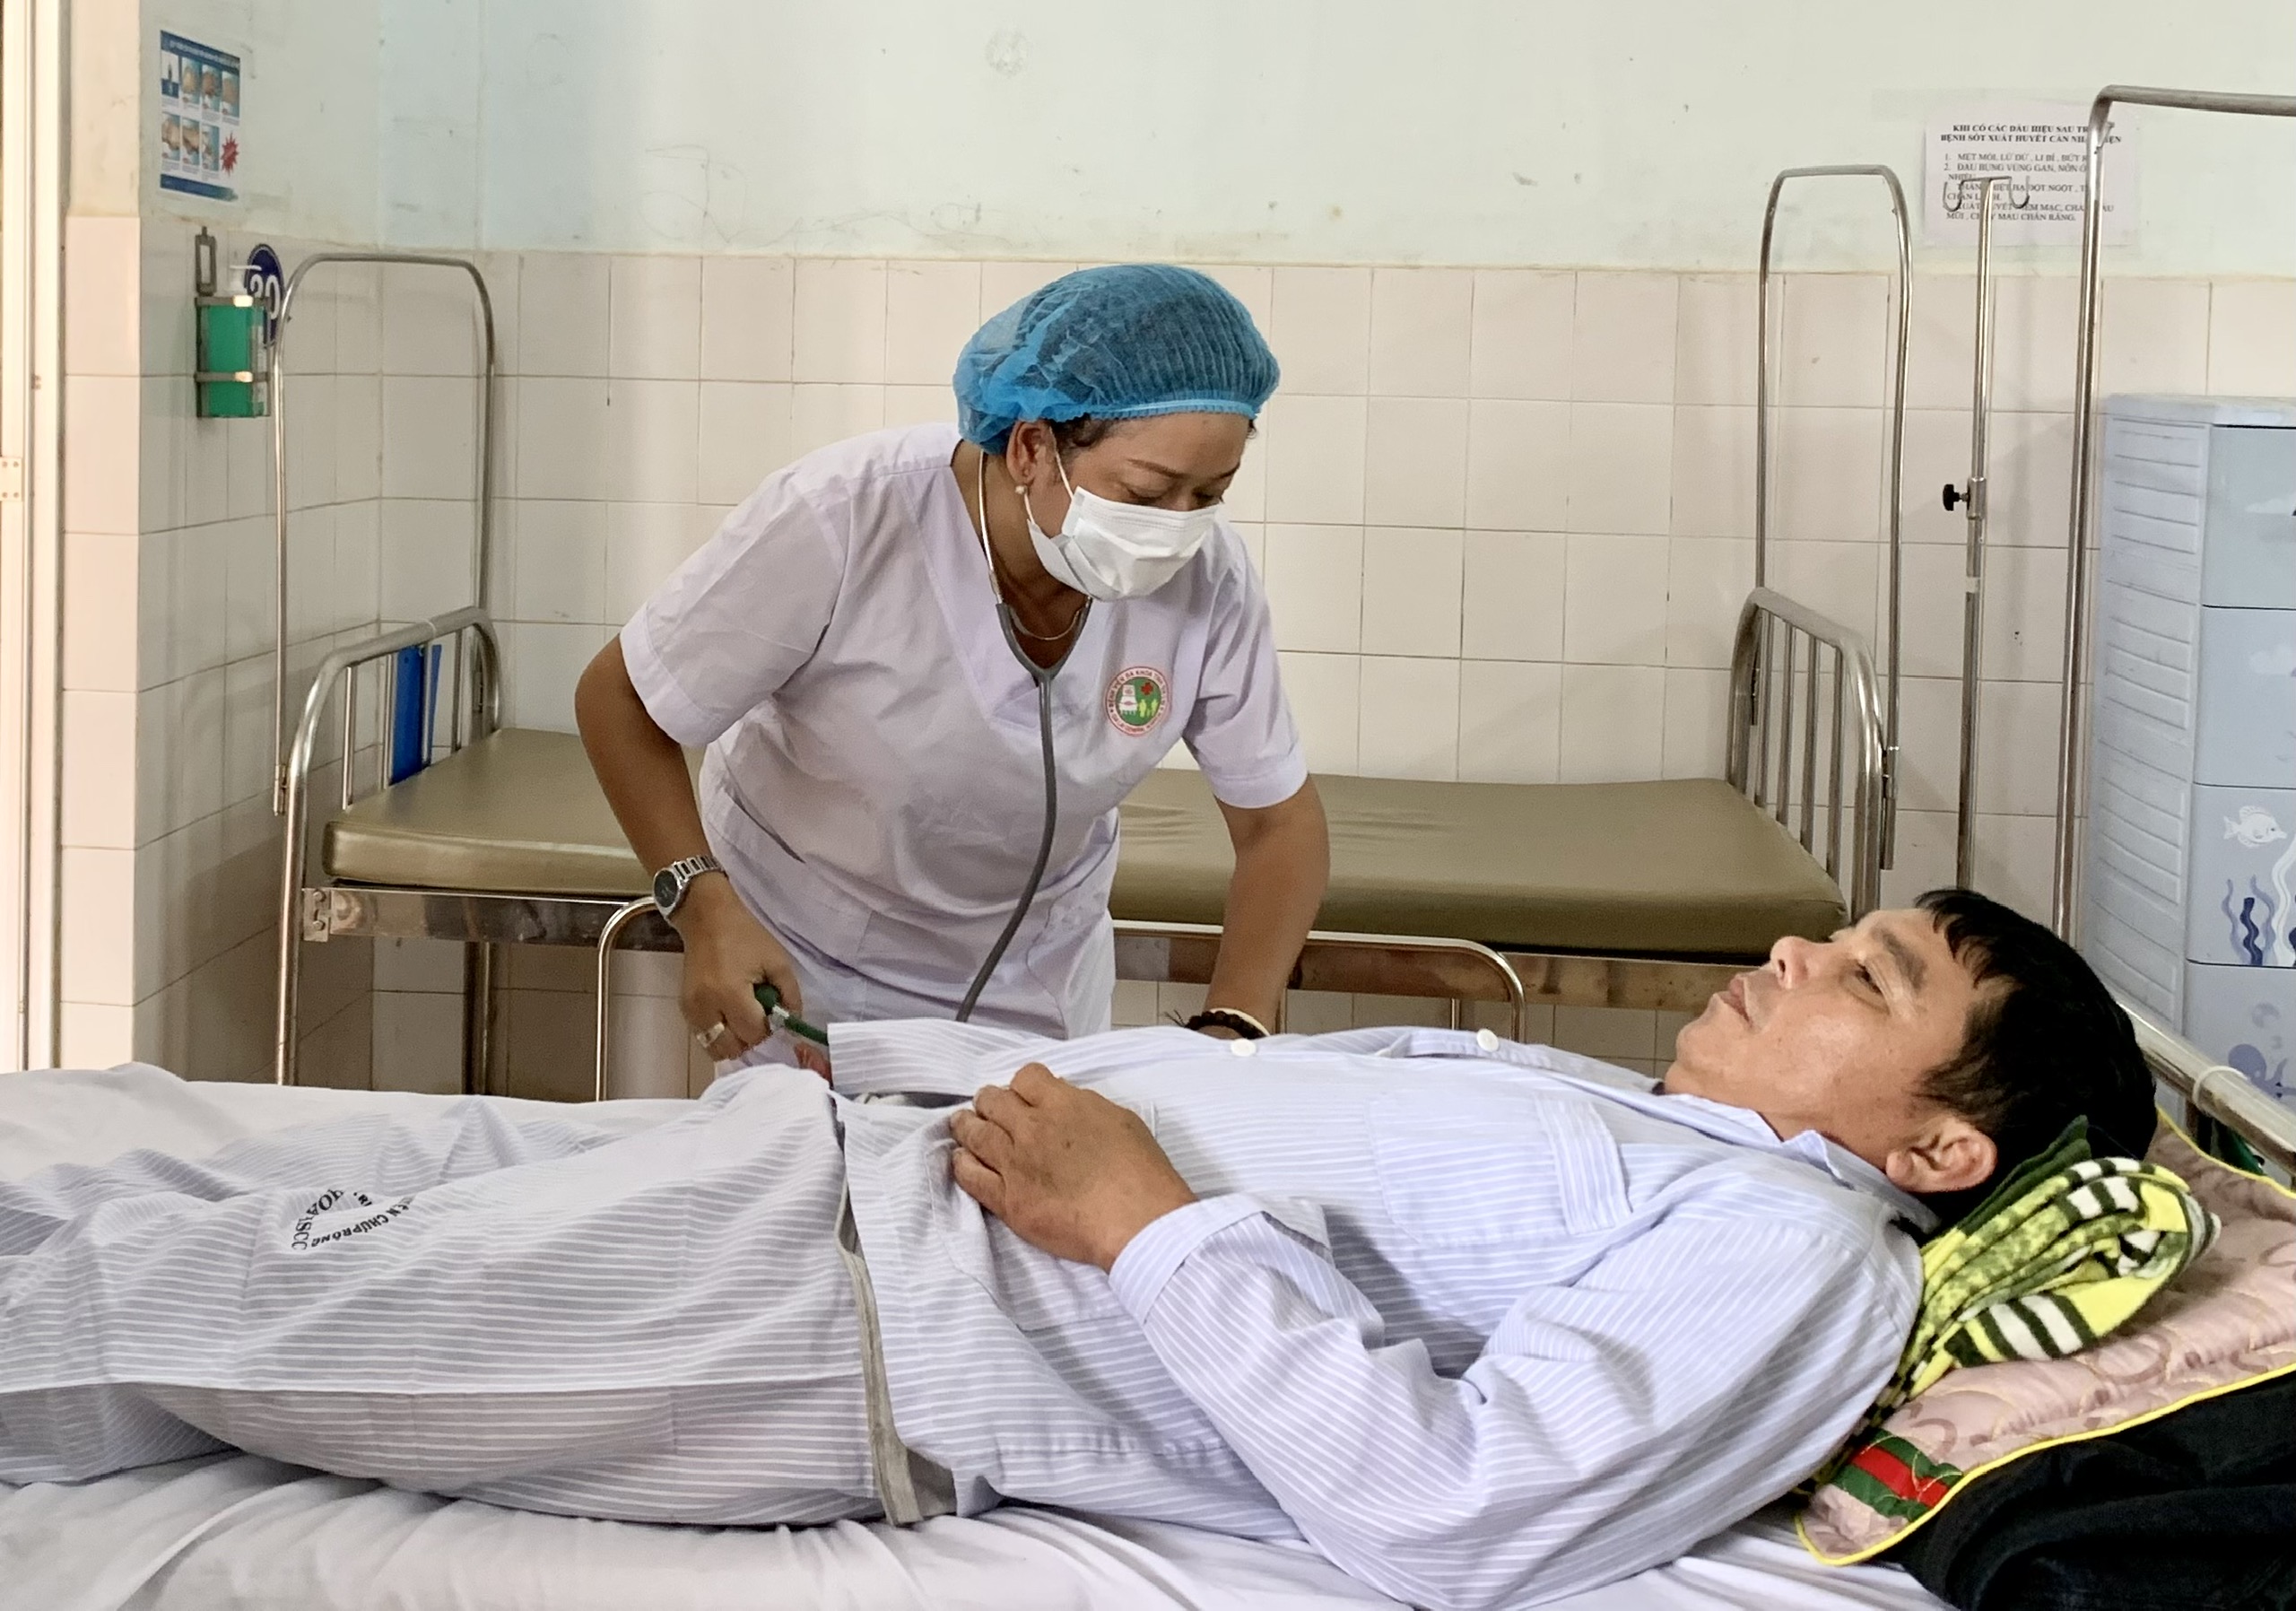 Chăm sóc bệnh nhân bị bệnh sốt xuất huyết tại Khoa Bệnh nhiệt đới (Bệnh viện Đa khoa tỉnh). Ảnh: Như Nguyện